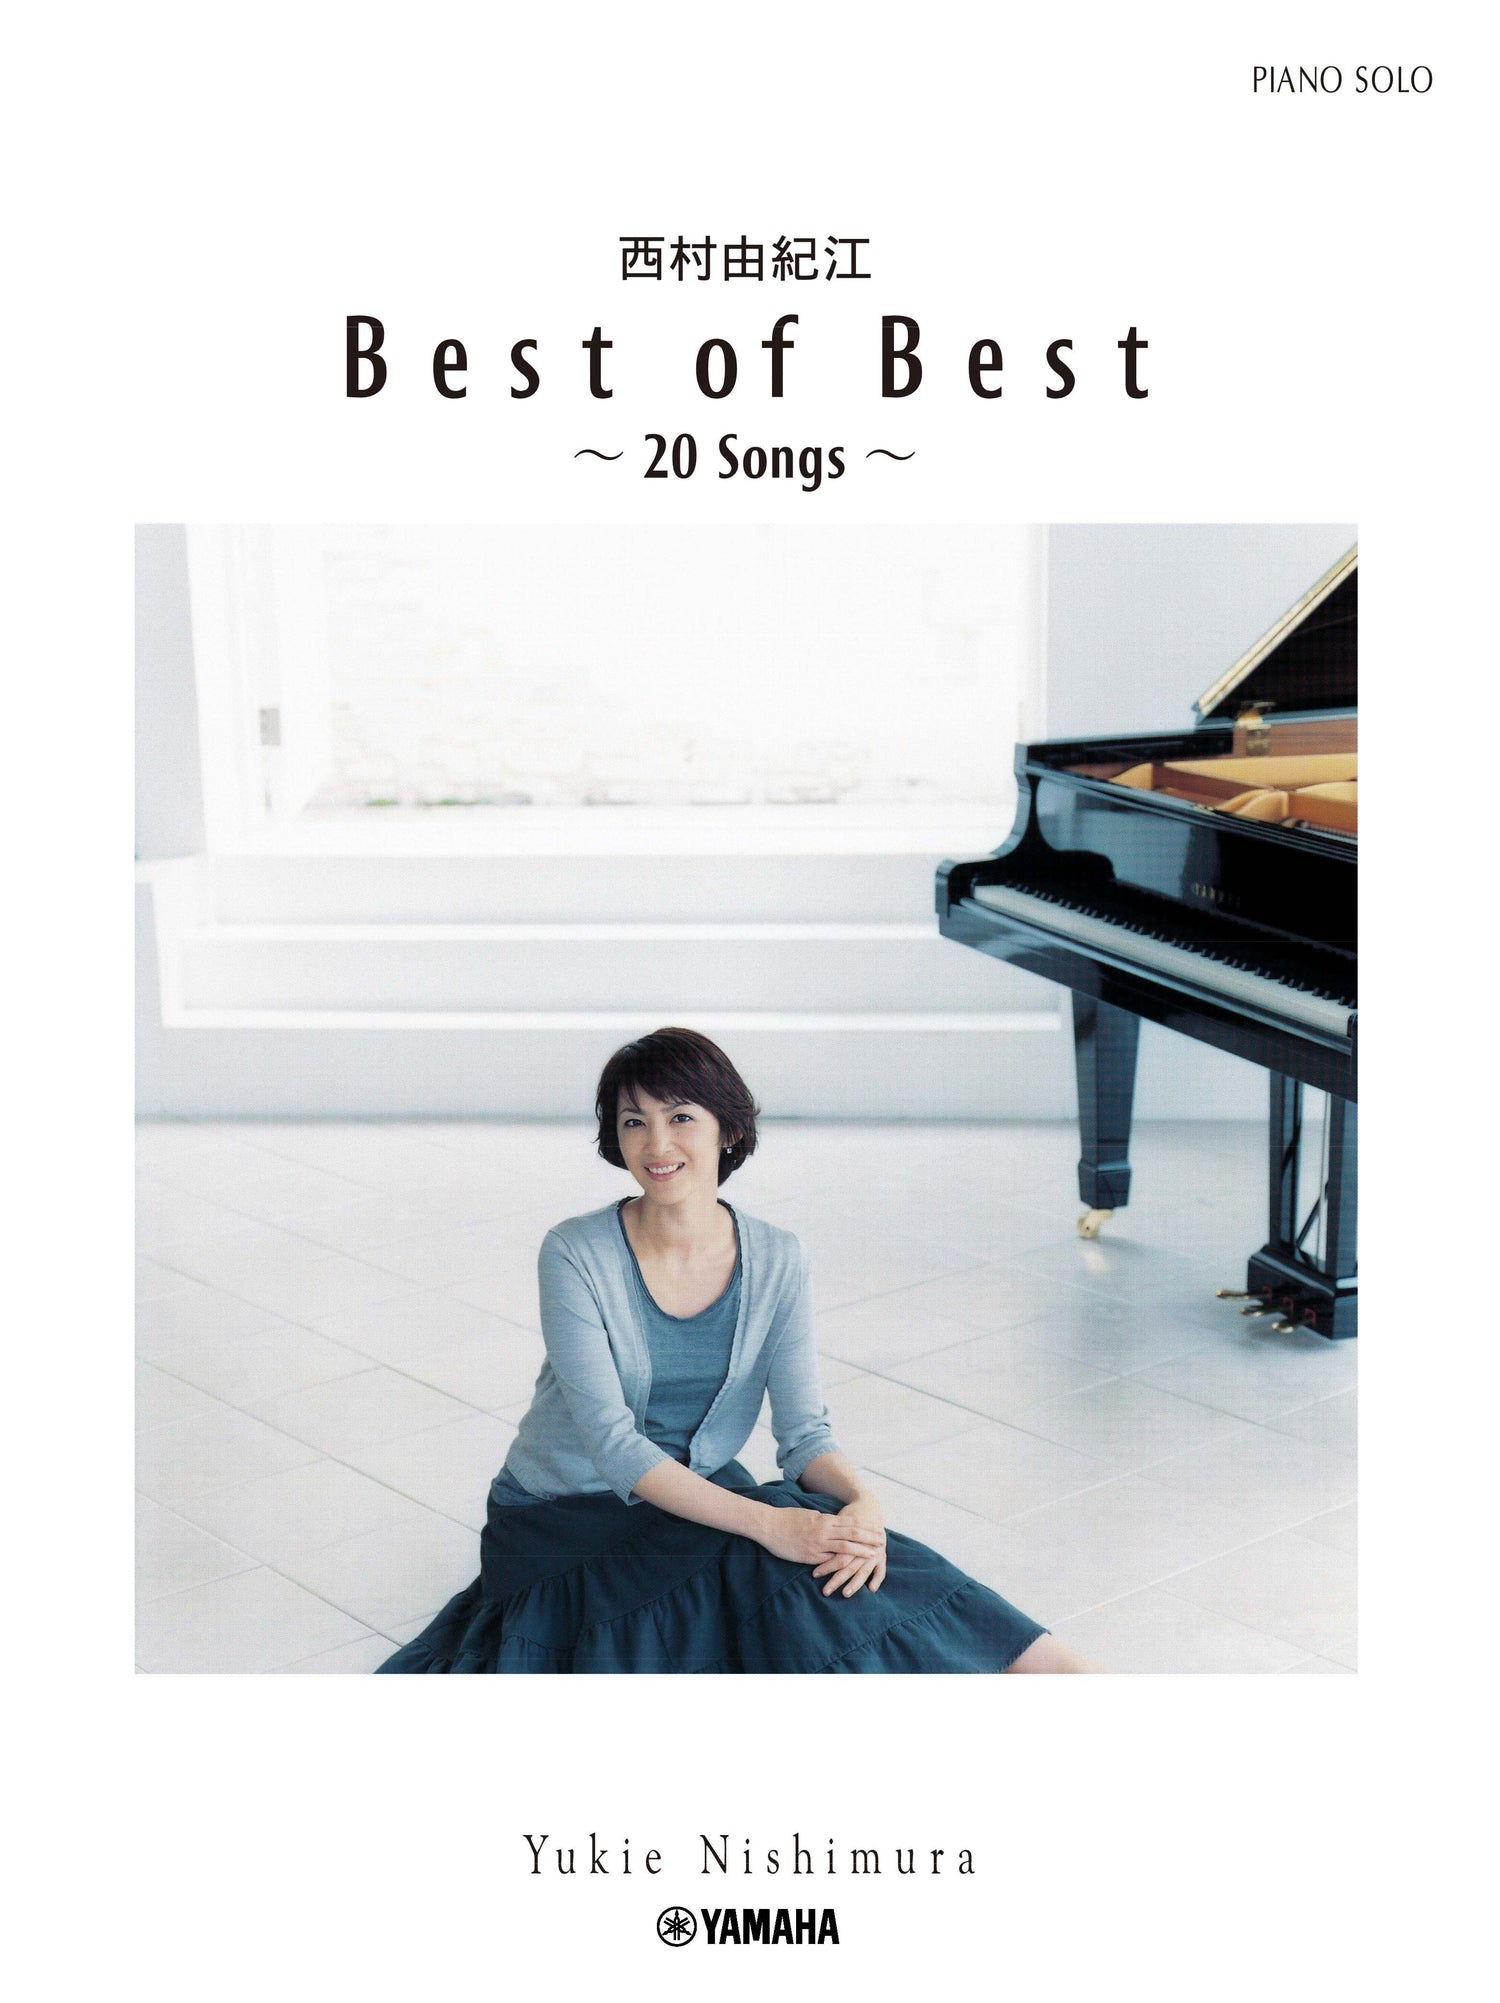 ピアノソロ 西村由紀江「Best of Best ～20 Songs～」